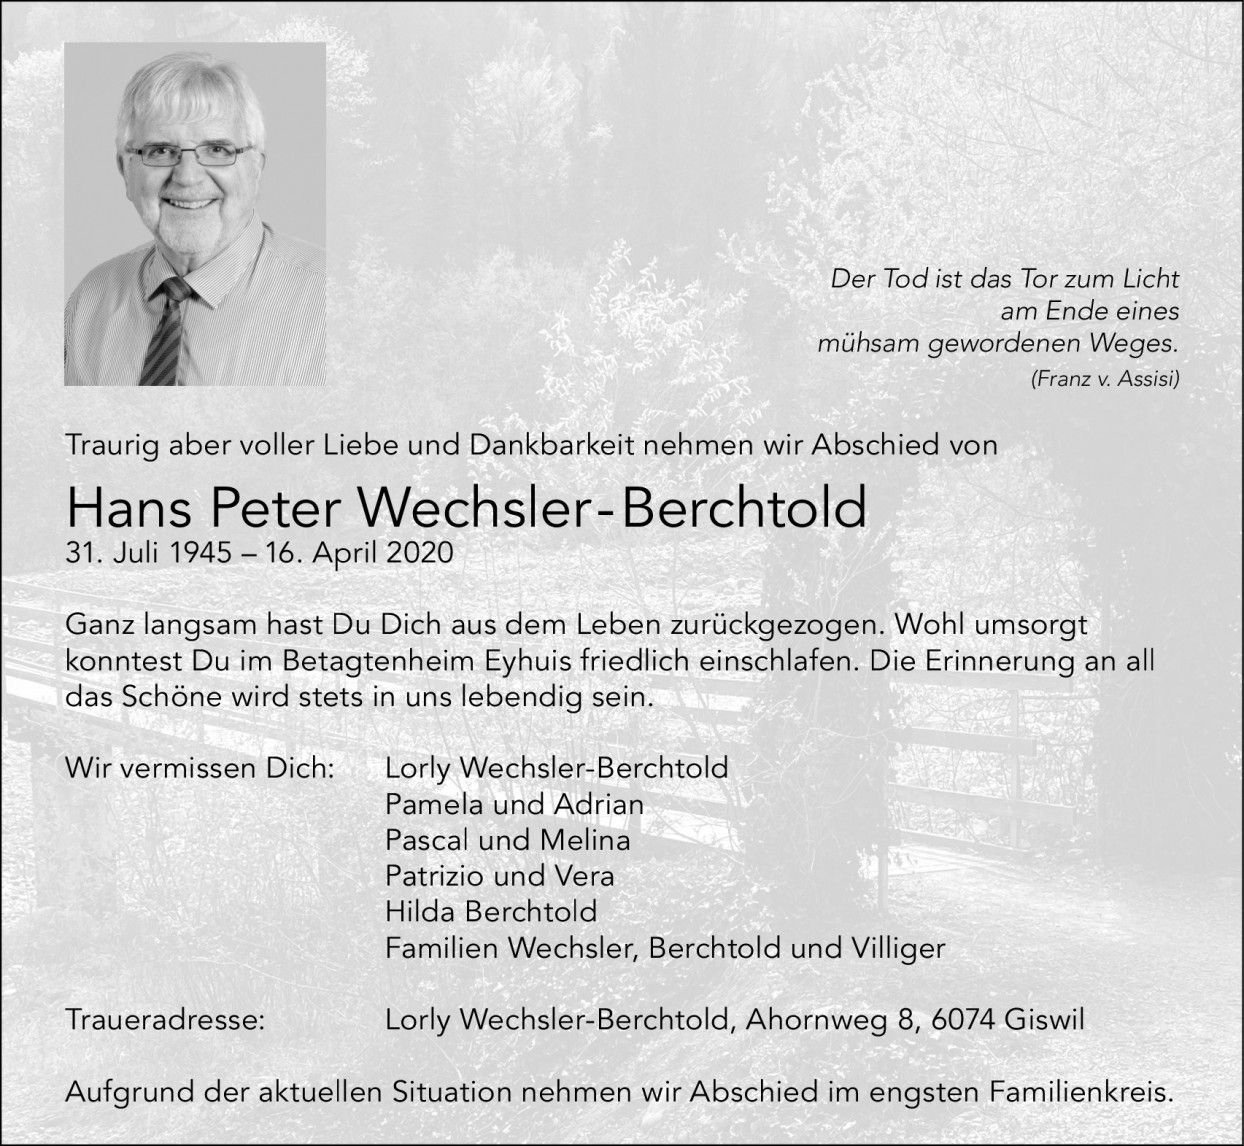 Hans Peter Wechsler-Berchtold